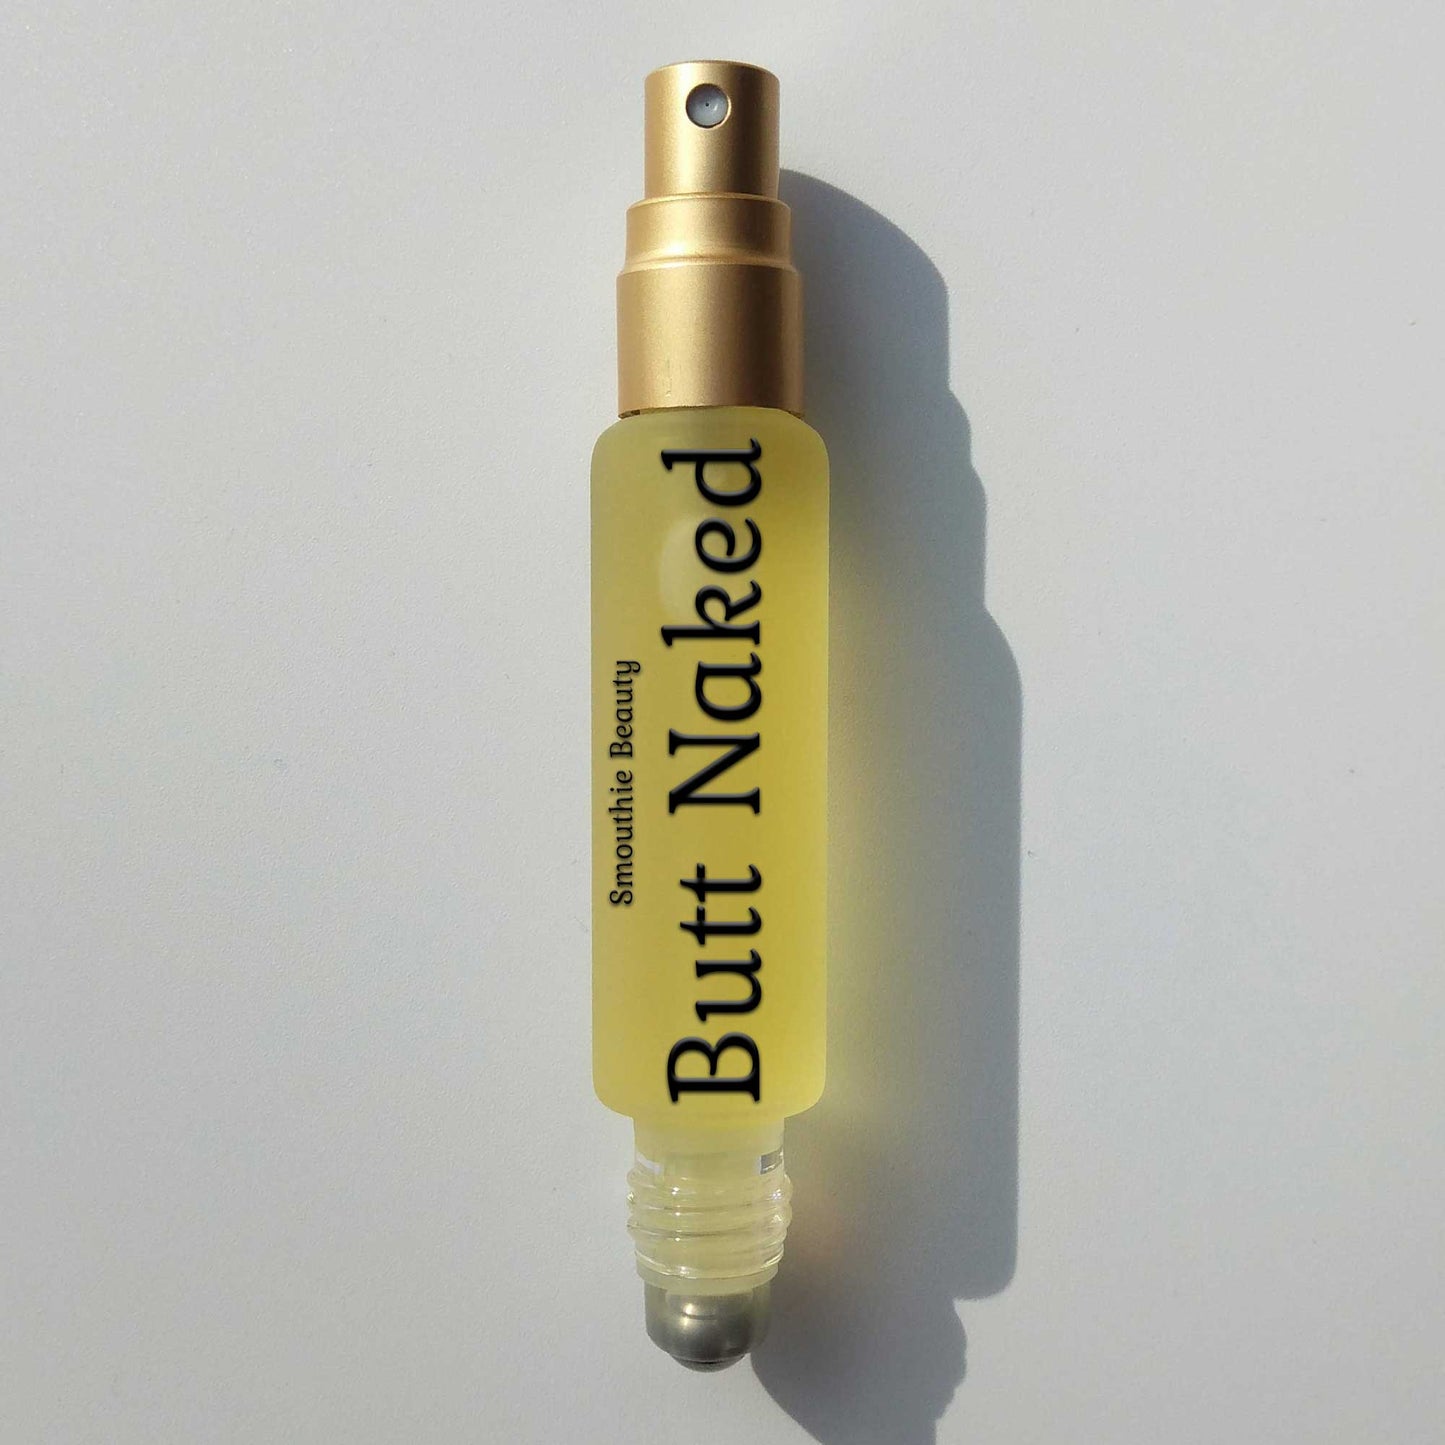 Butt Naked <br/>2-N-1 Perfume Oil Roll-On Fragrance